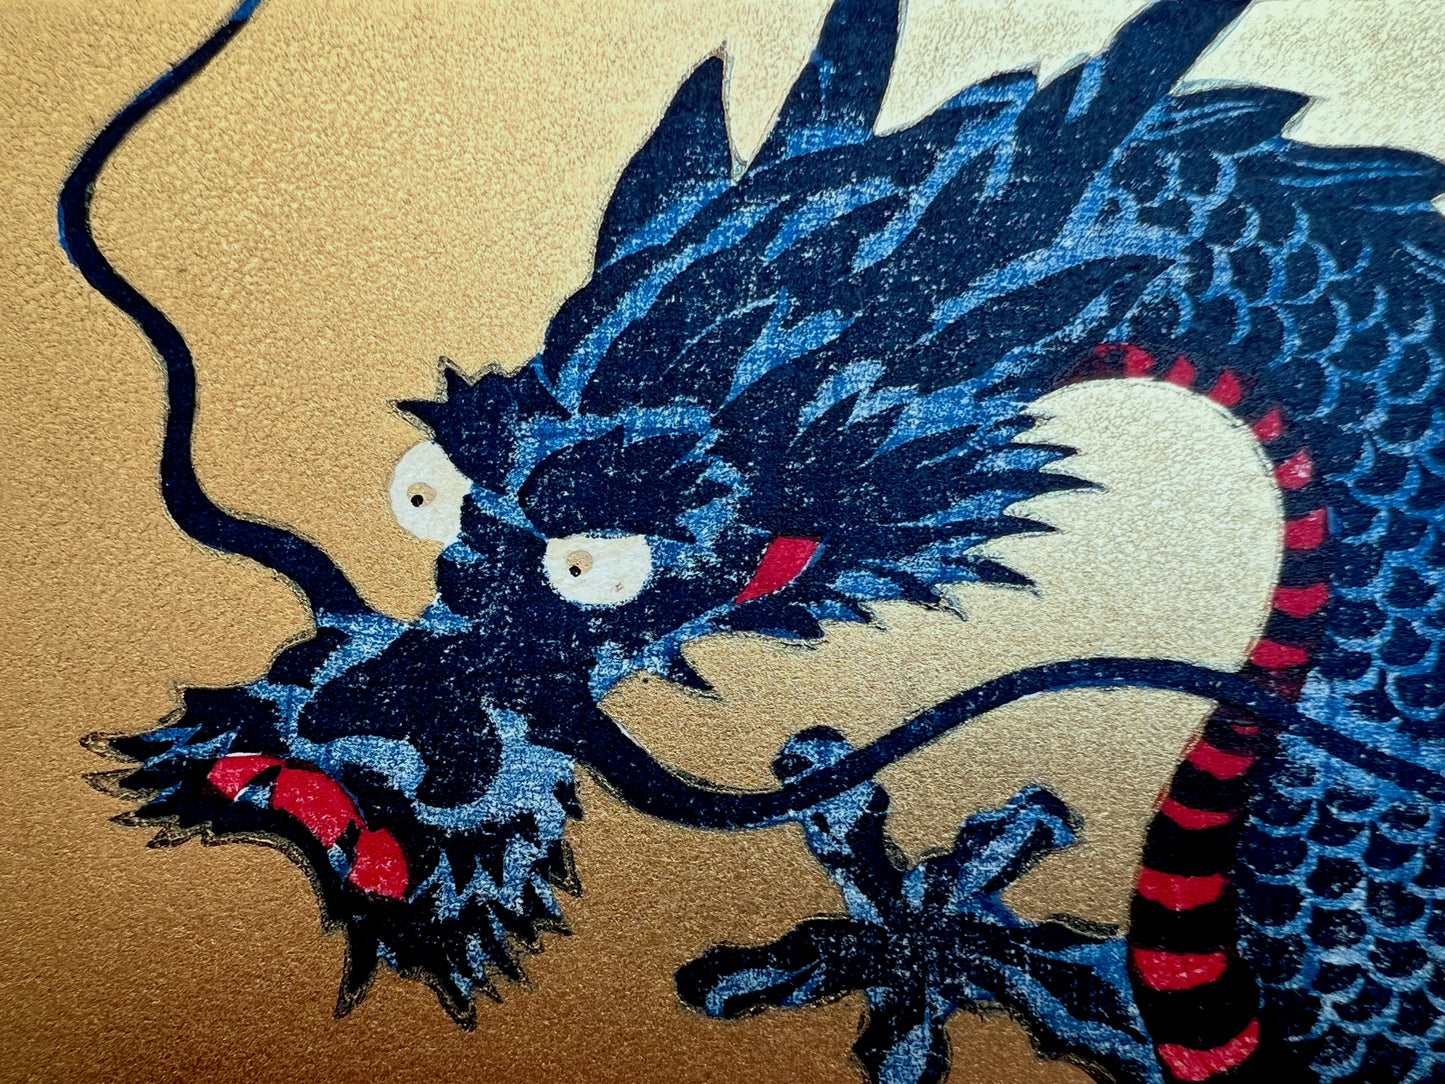 estampe japonaise dragon bleu sur fond or, gueule fermée, gros plan sur le tête avec moustache